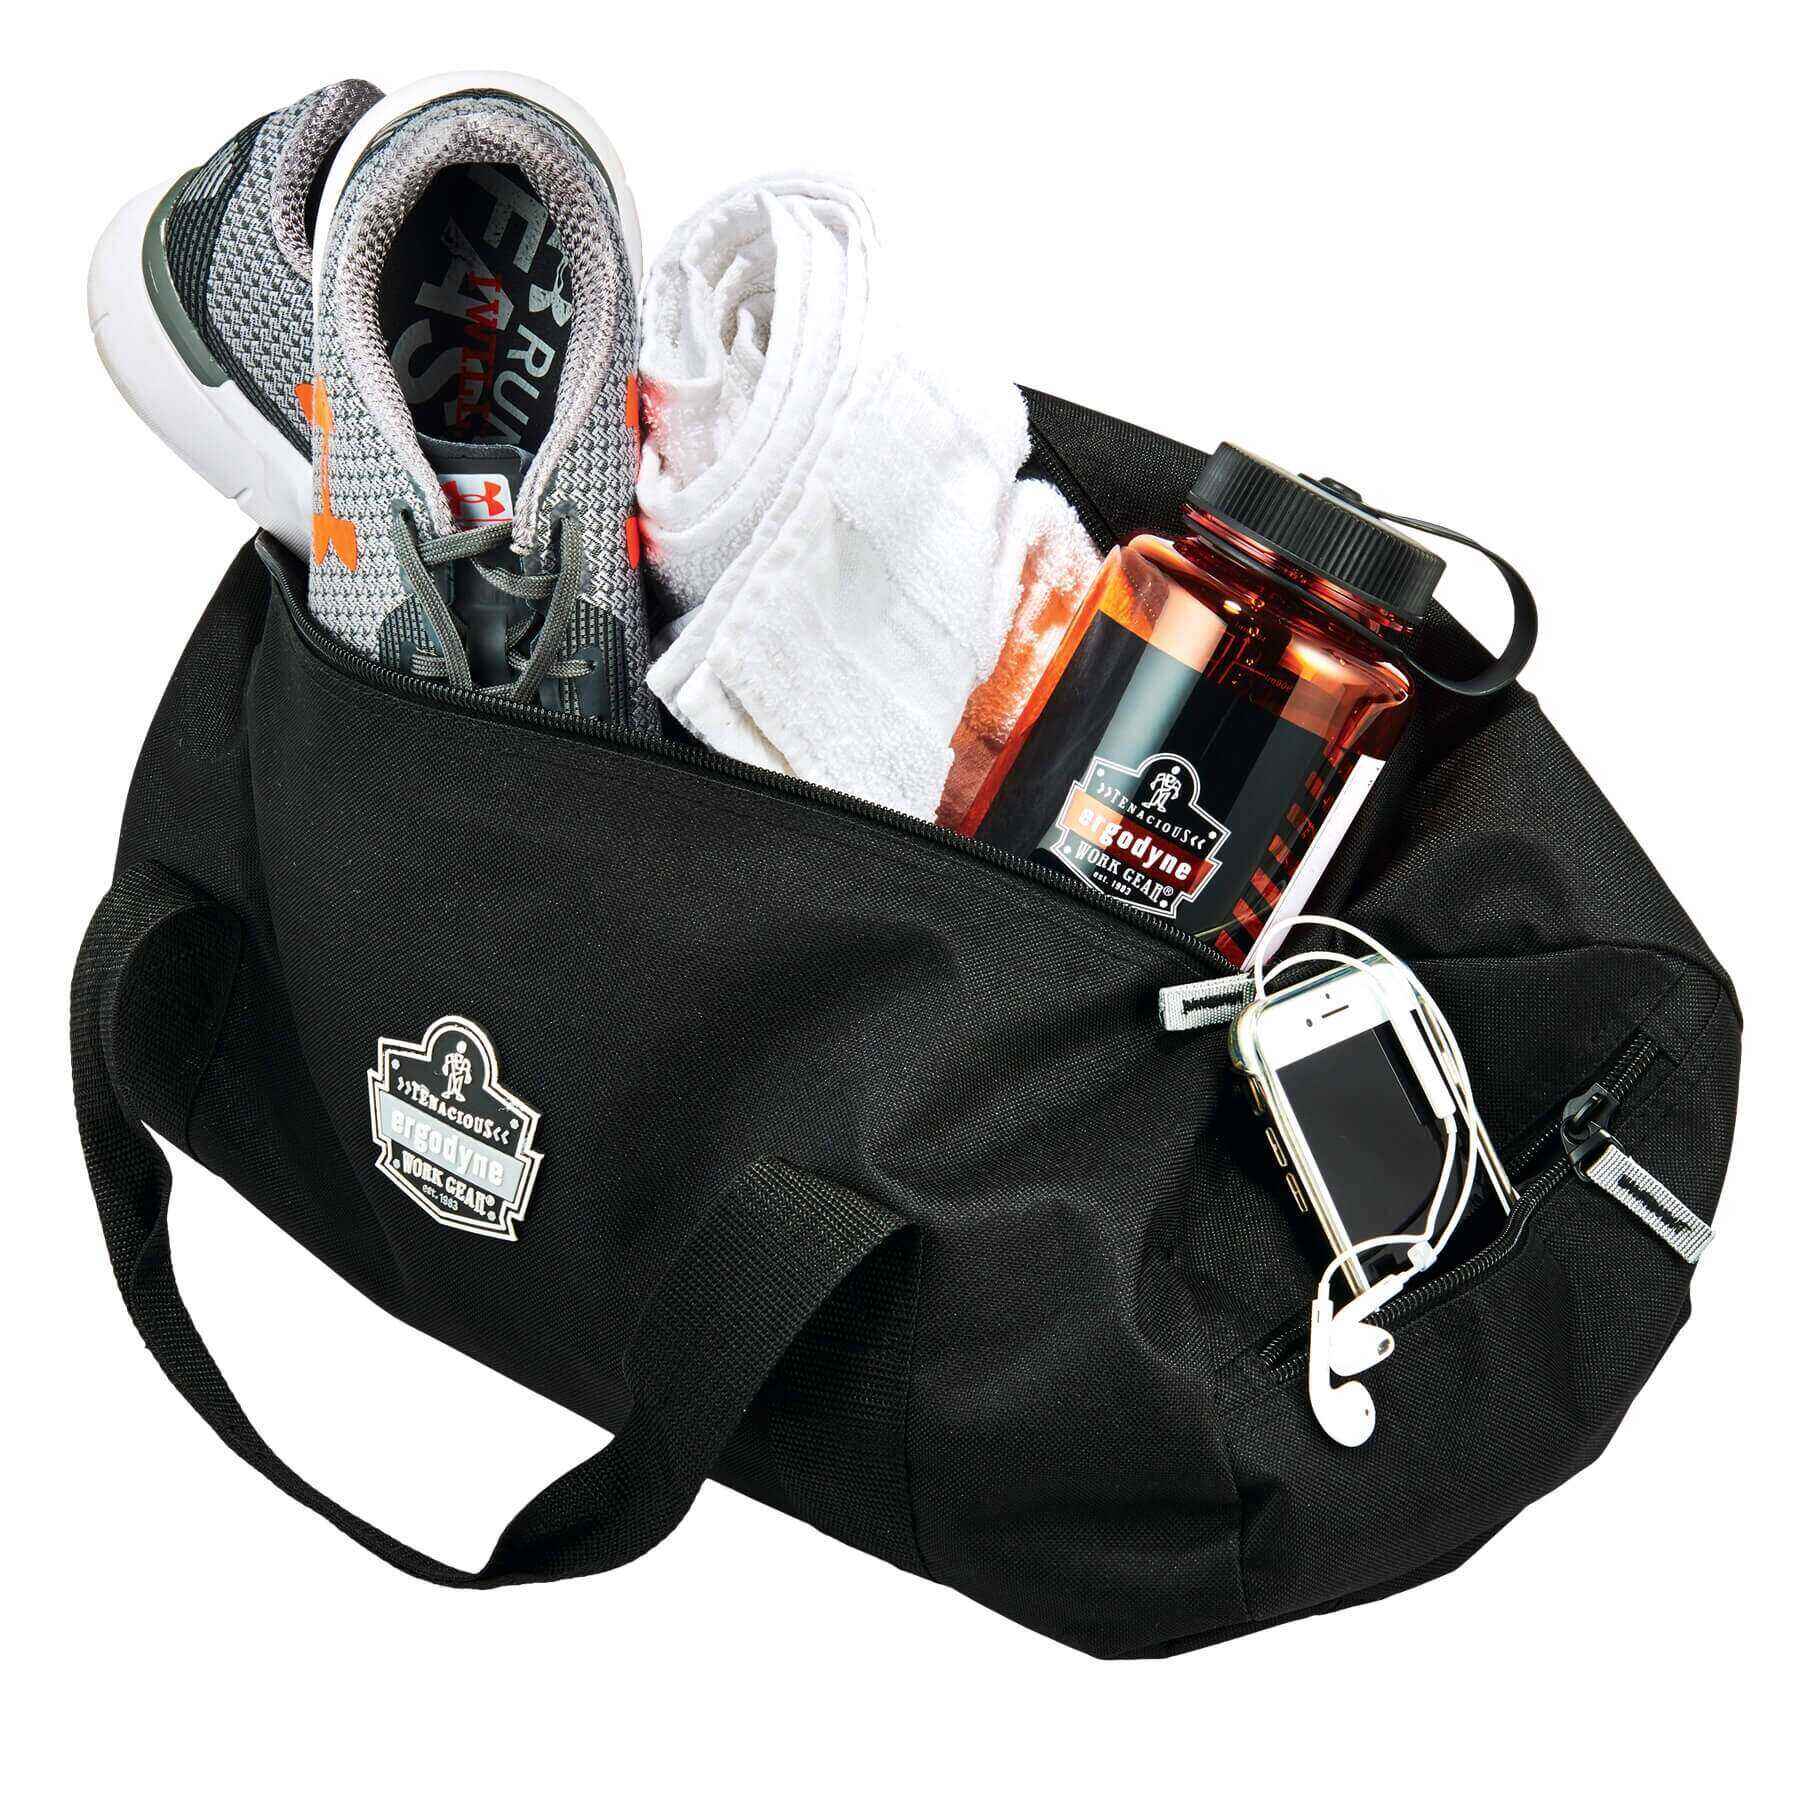 Arsenal® 5020 Standard Gear Duffel Bag - Polyester